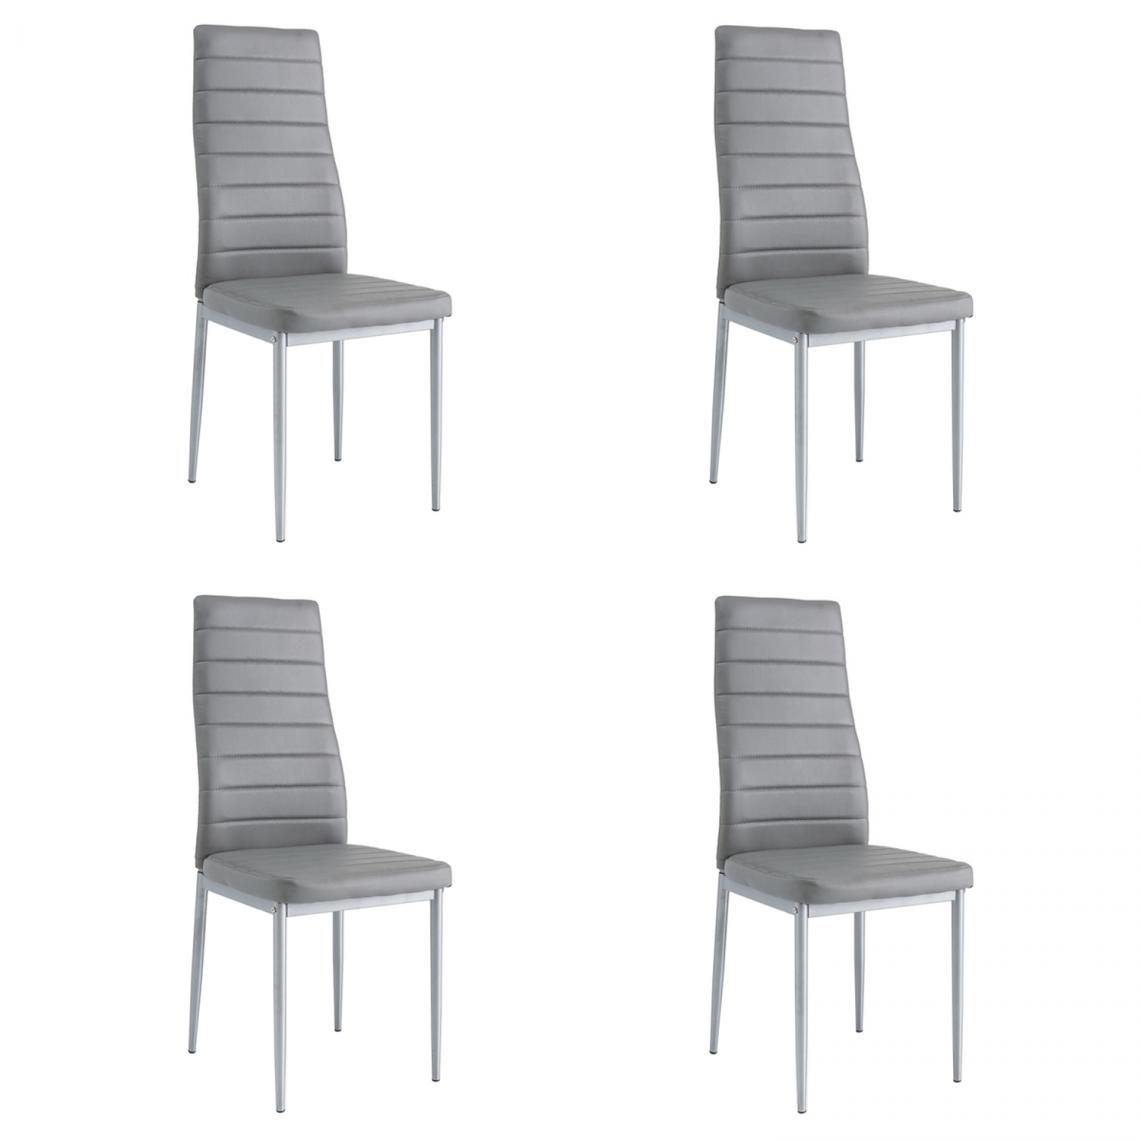 Hucoco - WERI - Lot de 4 chaises minimalistes - 96x40x38 cm - Revêtement similicuir - Chaise salon - Gris - Chaises